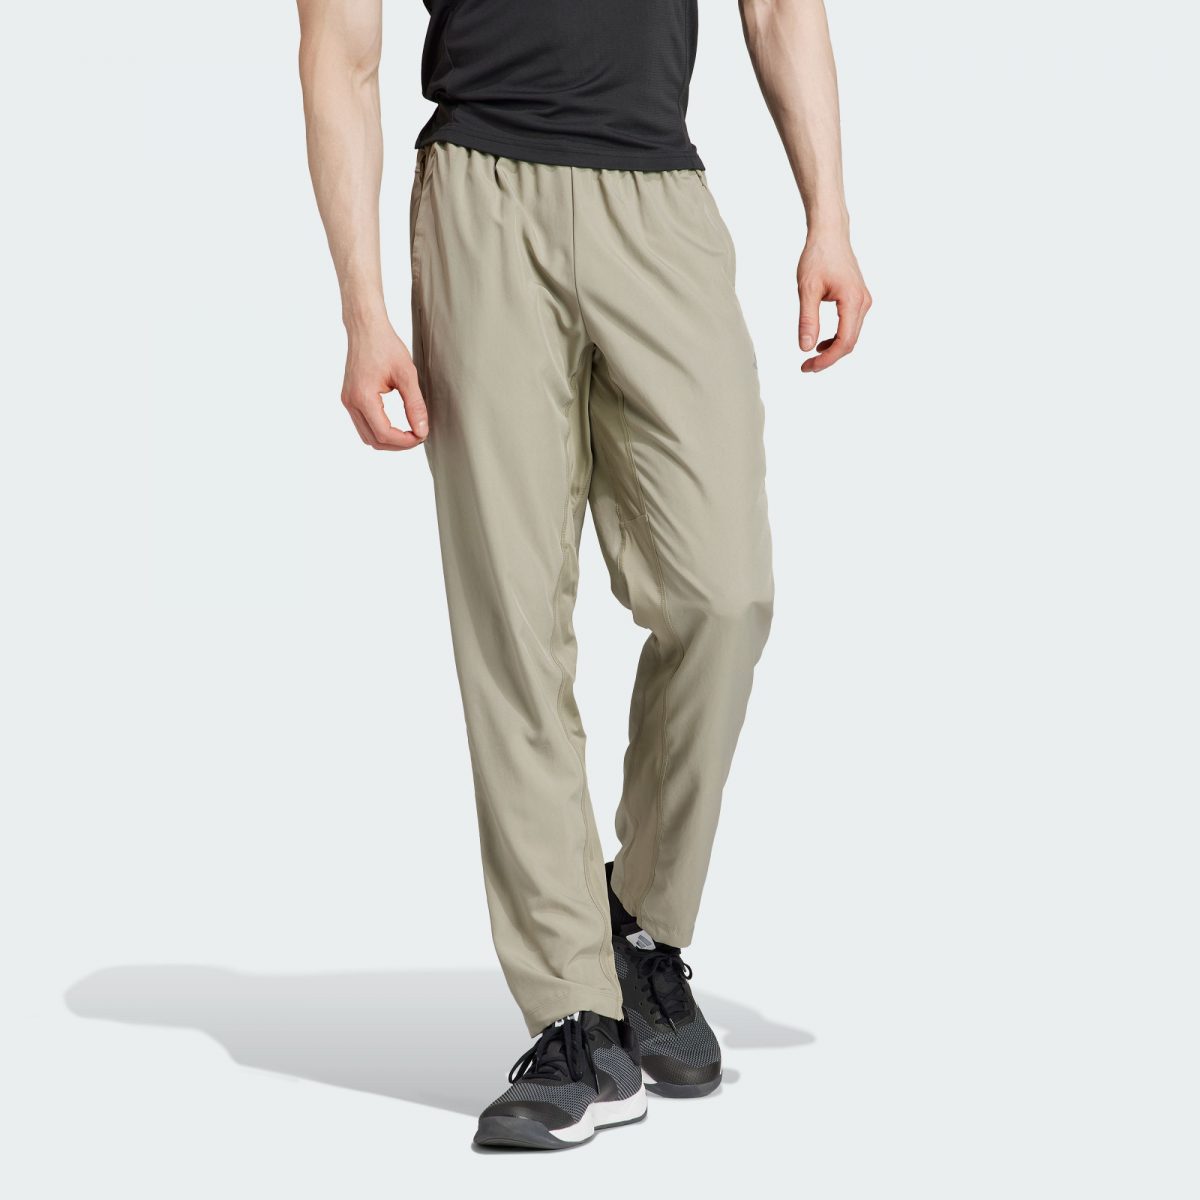 Мужские брюки adidas TRAIN ESSENTIALS TRAINING PANTS фото